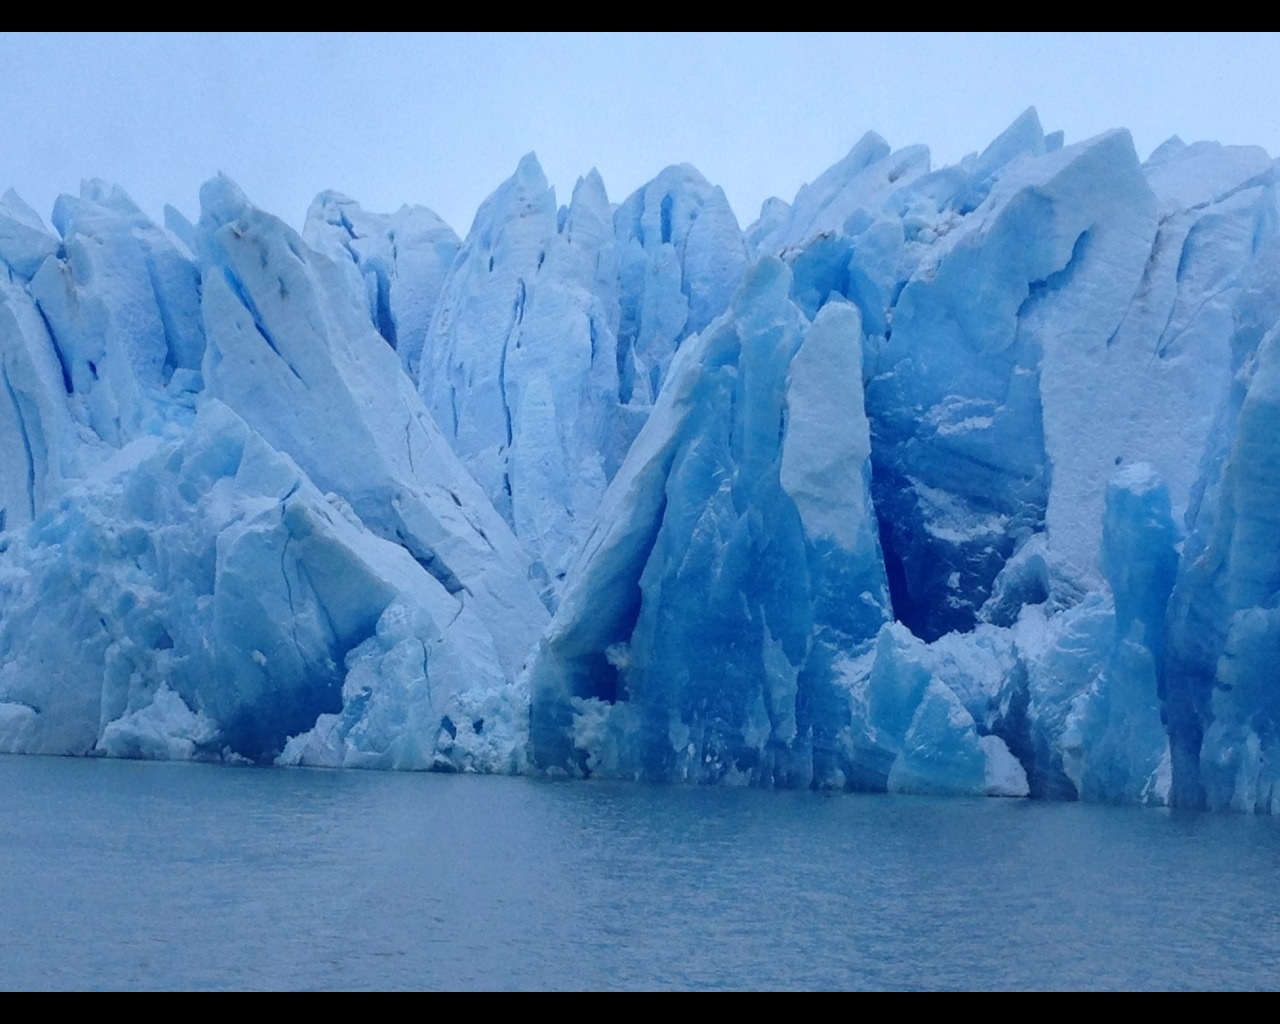 Glacier Grey in Patagonia, Chile